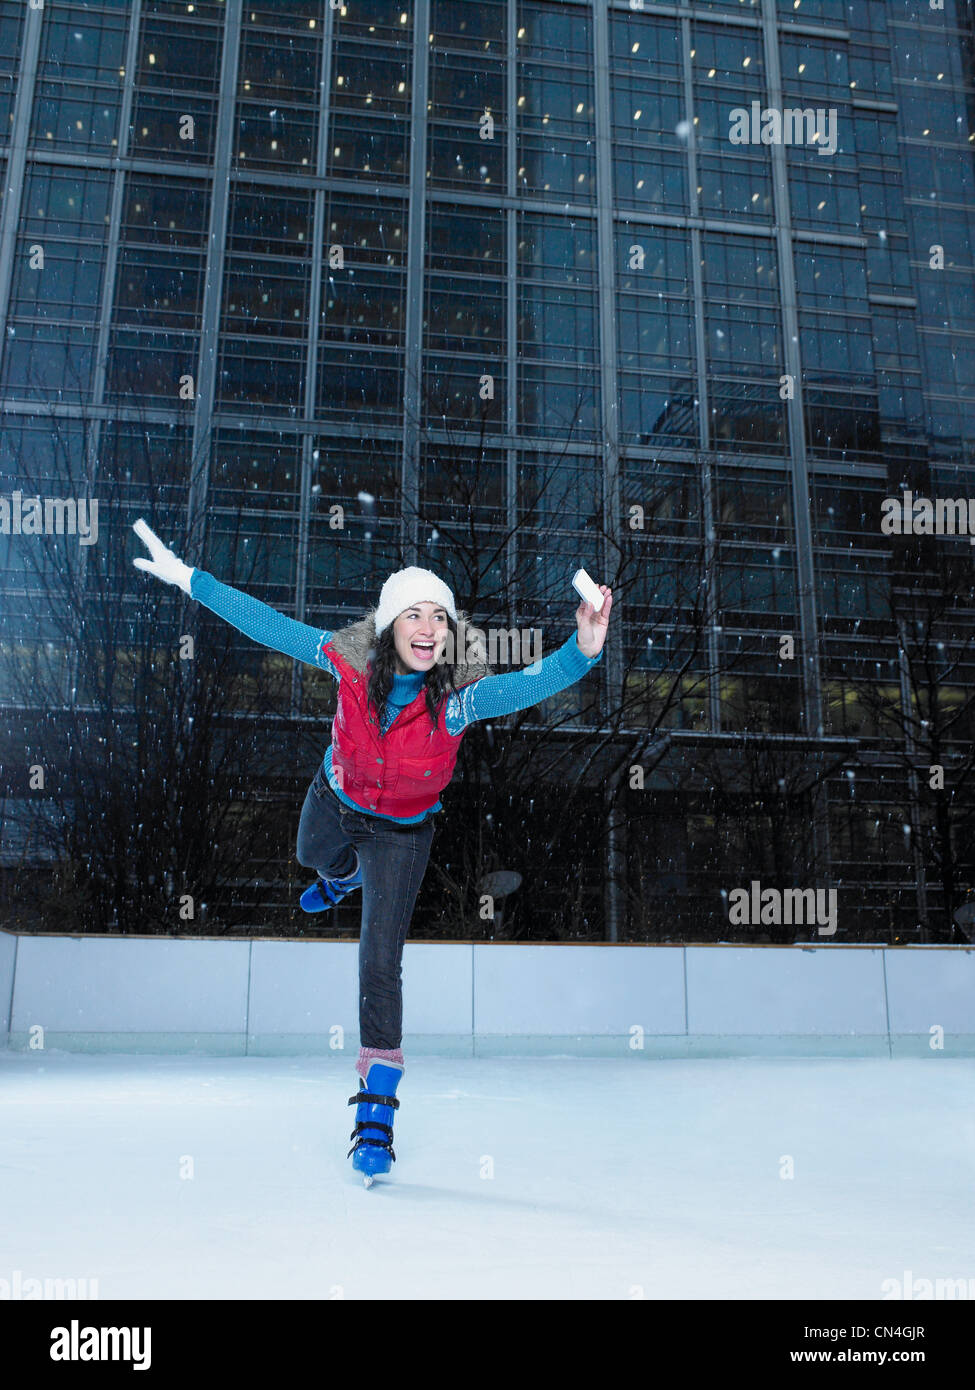 Femme de prendre une photo d'elle-même alors que le patinage sur glace Banque D'Images